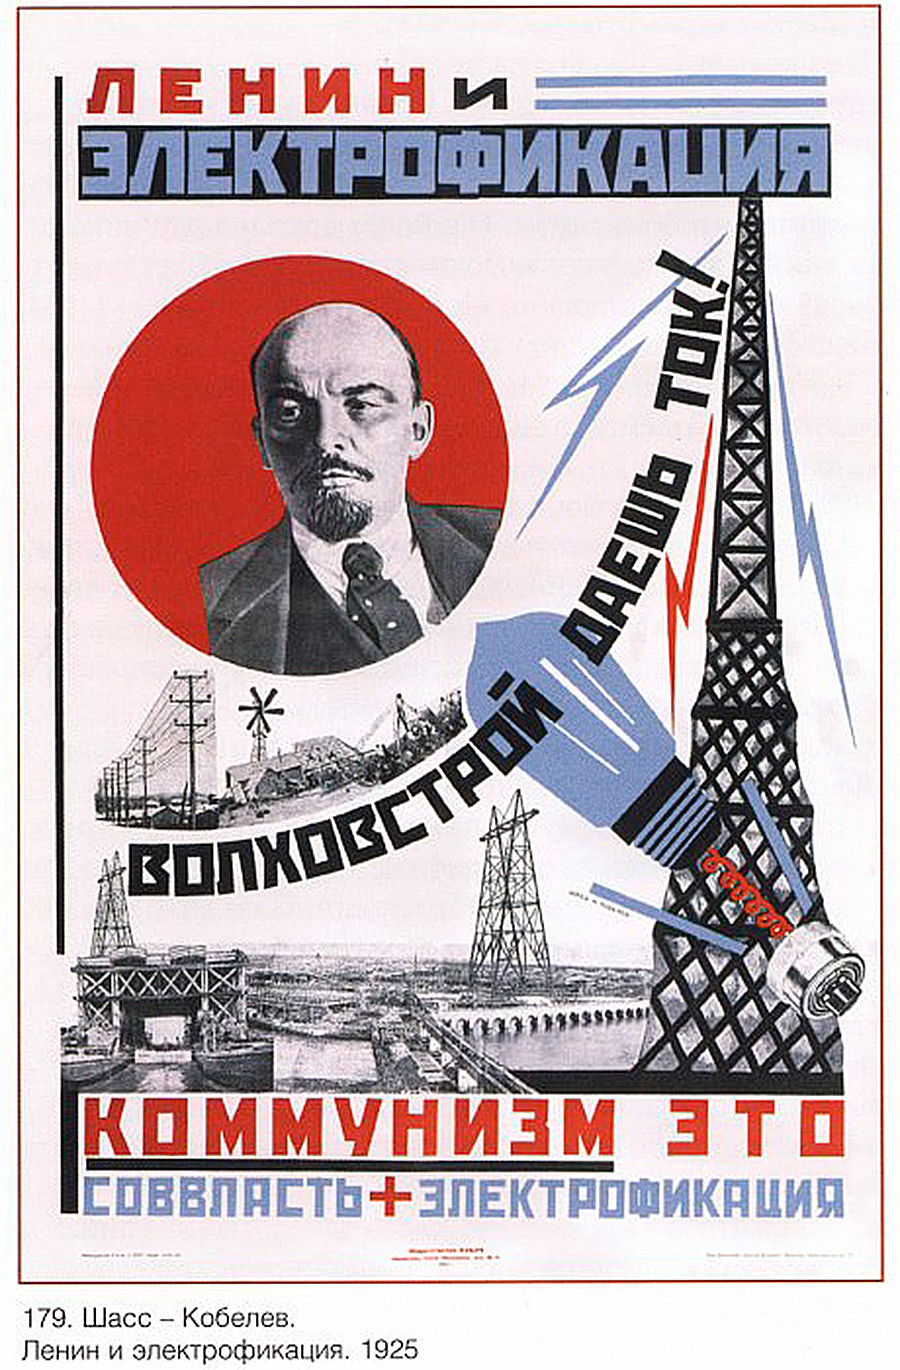 「レーニンと電化。ヴォルホフ水力発電所が電気を与える。共産主義はソ連政府＋電化だ」